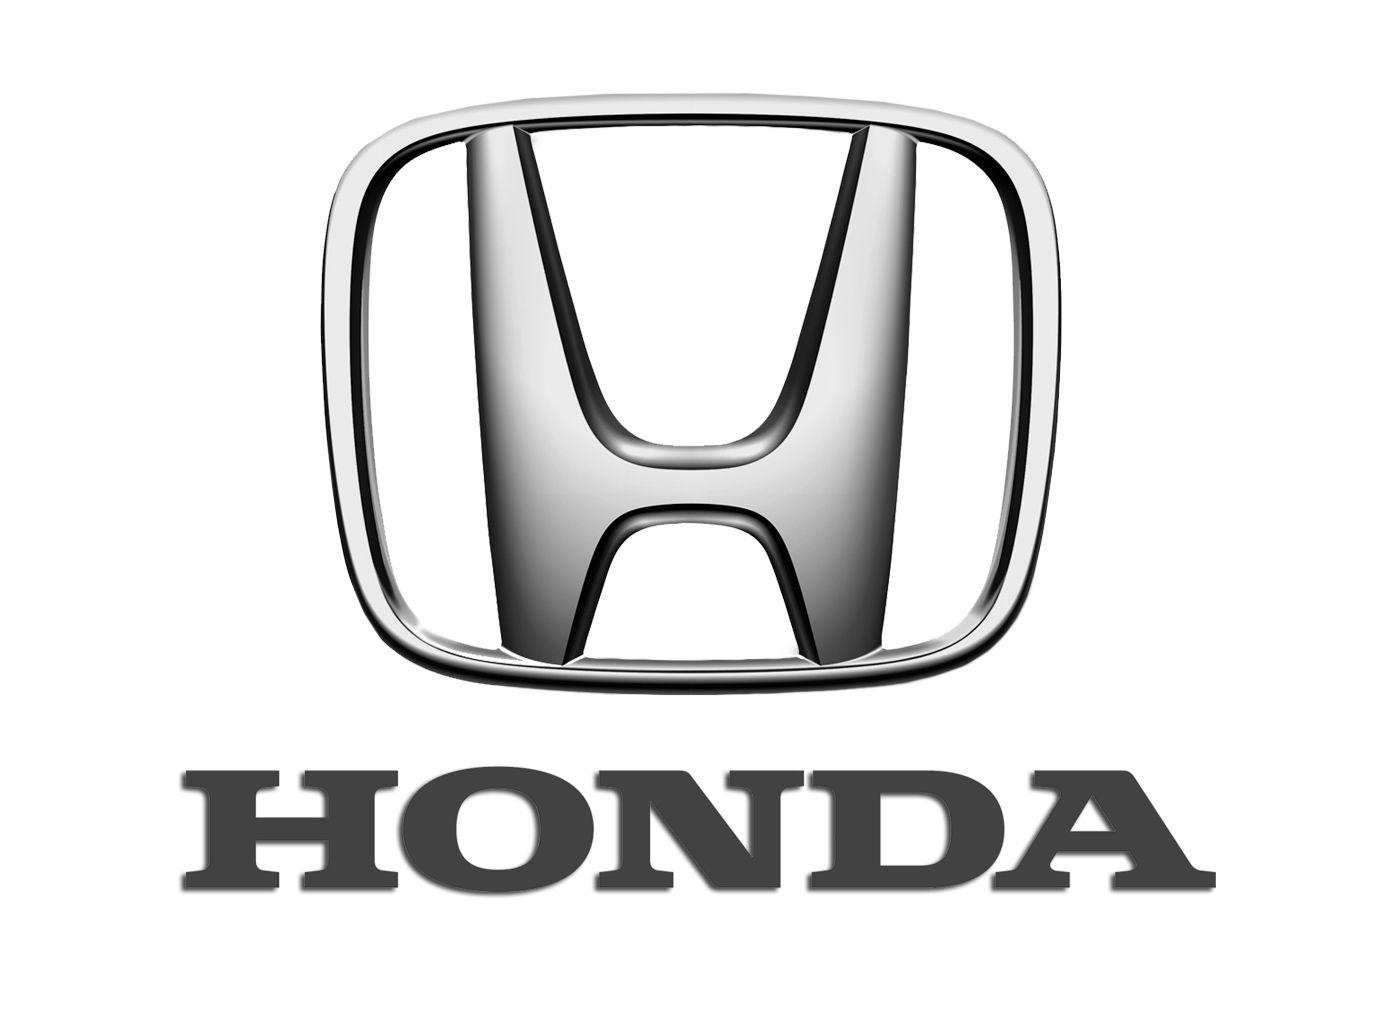 Honda Cars Logo Emblem Wallpaper. Big Size Wallpaper. Download